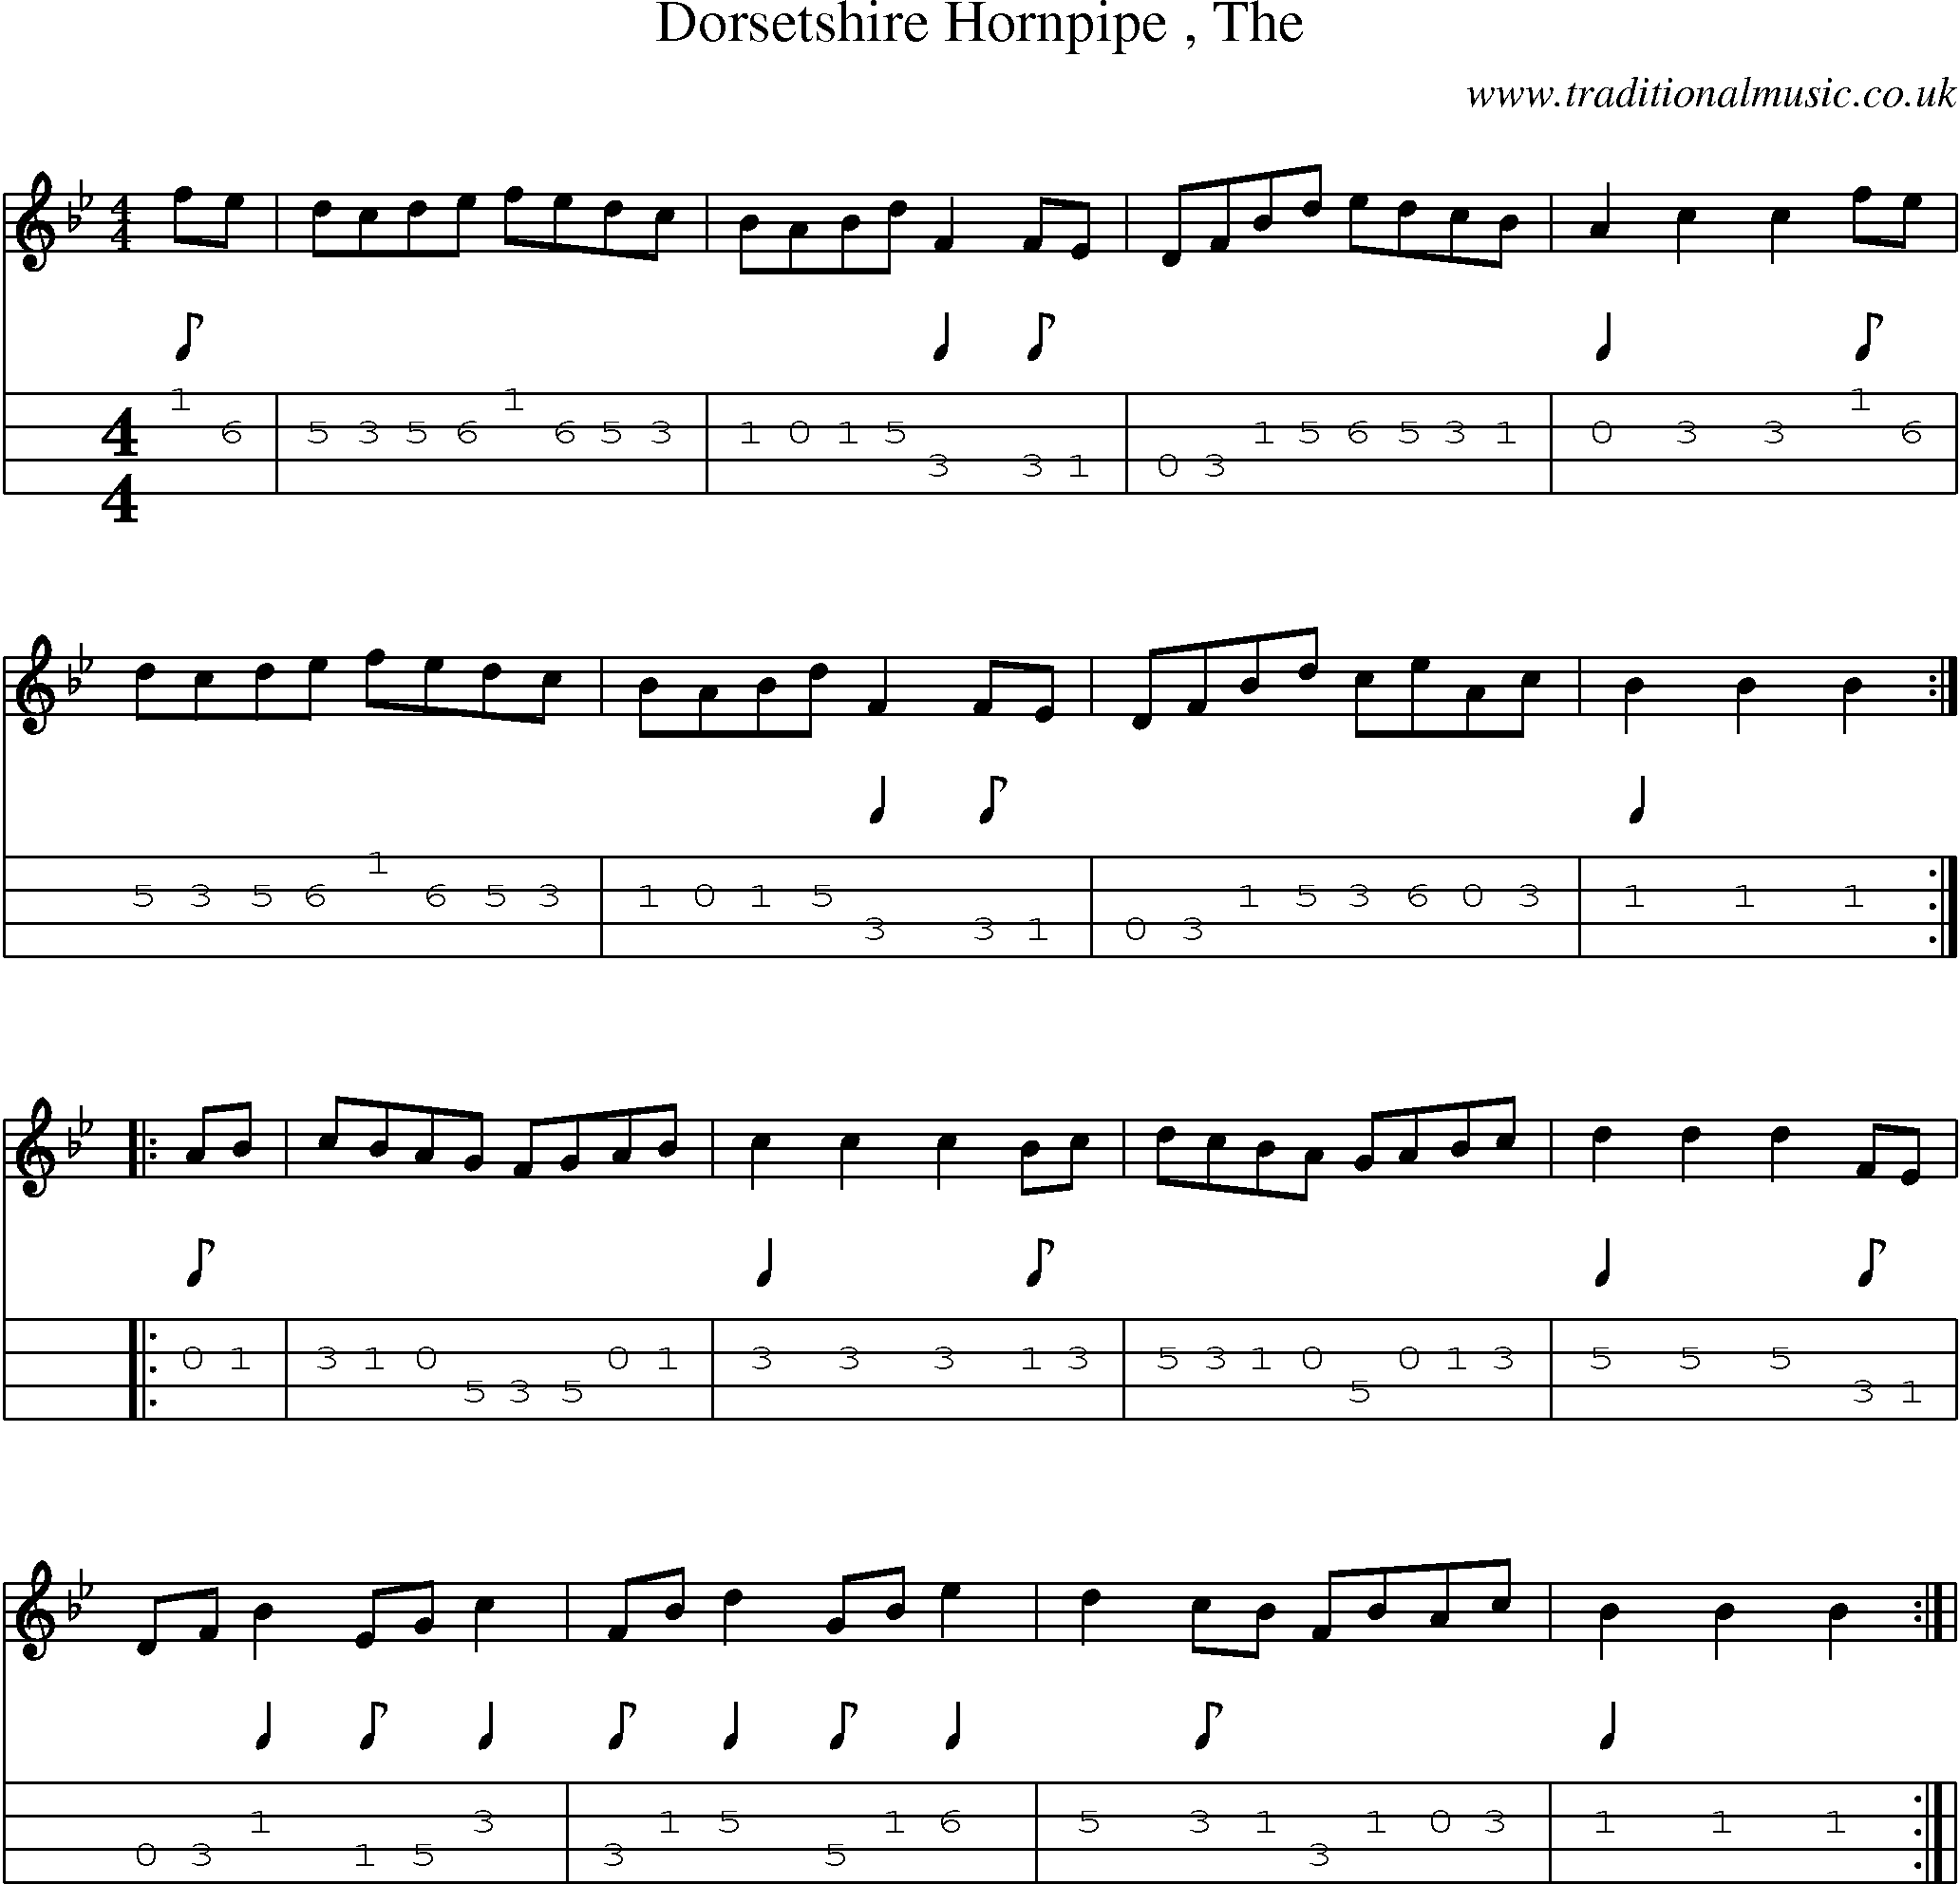 Music Score and Mandolin Tabs for Dorsetshire Hornpipe